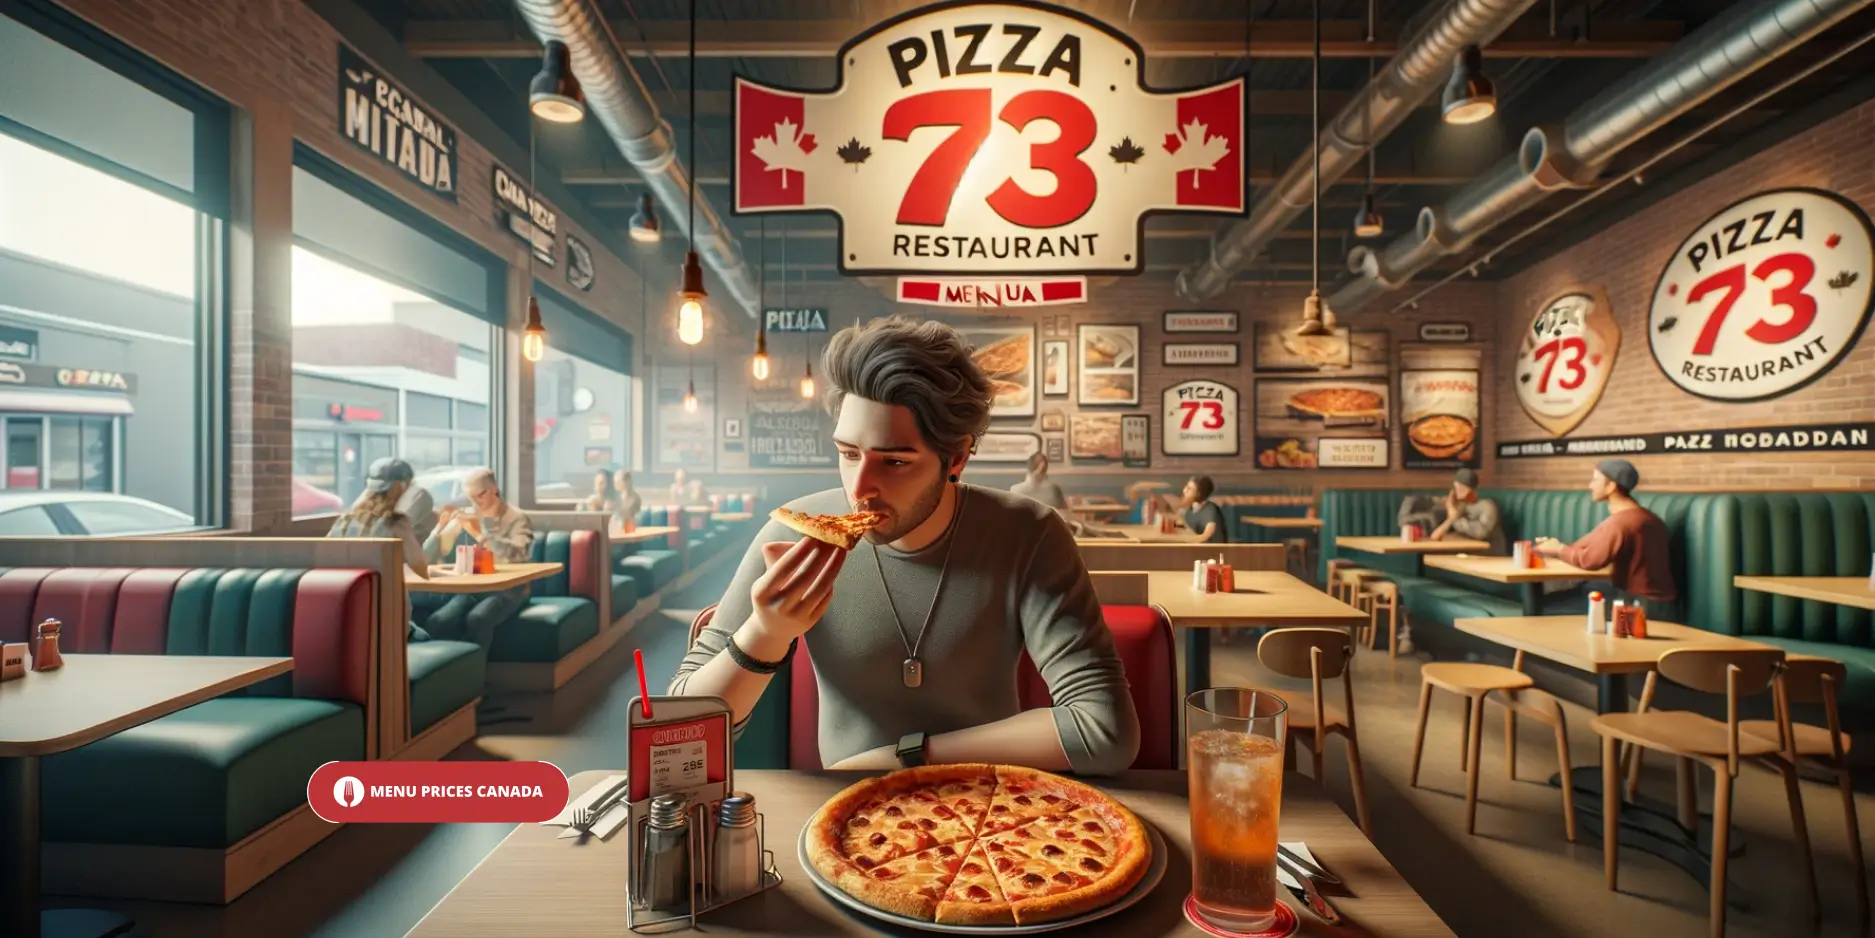 Pizza-73-Restaurant-Menu-Prices-Canada